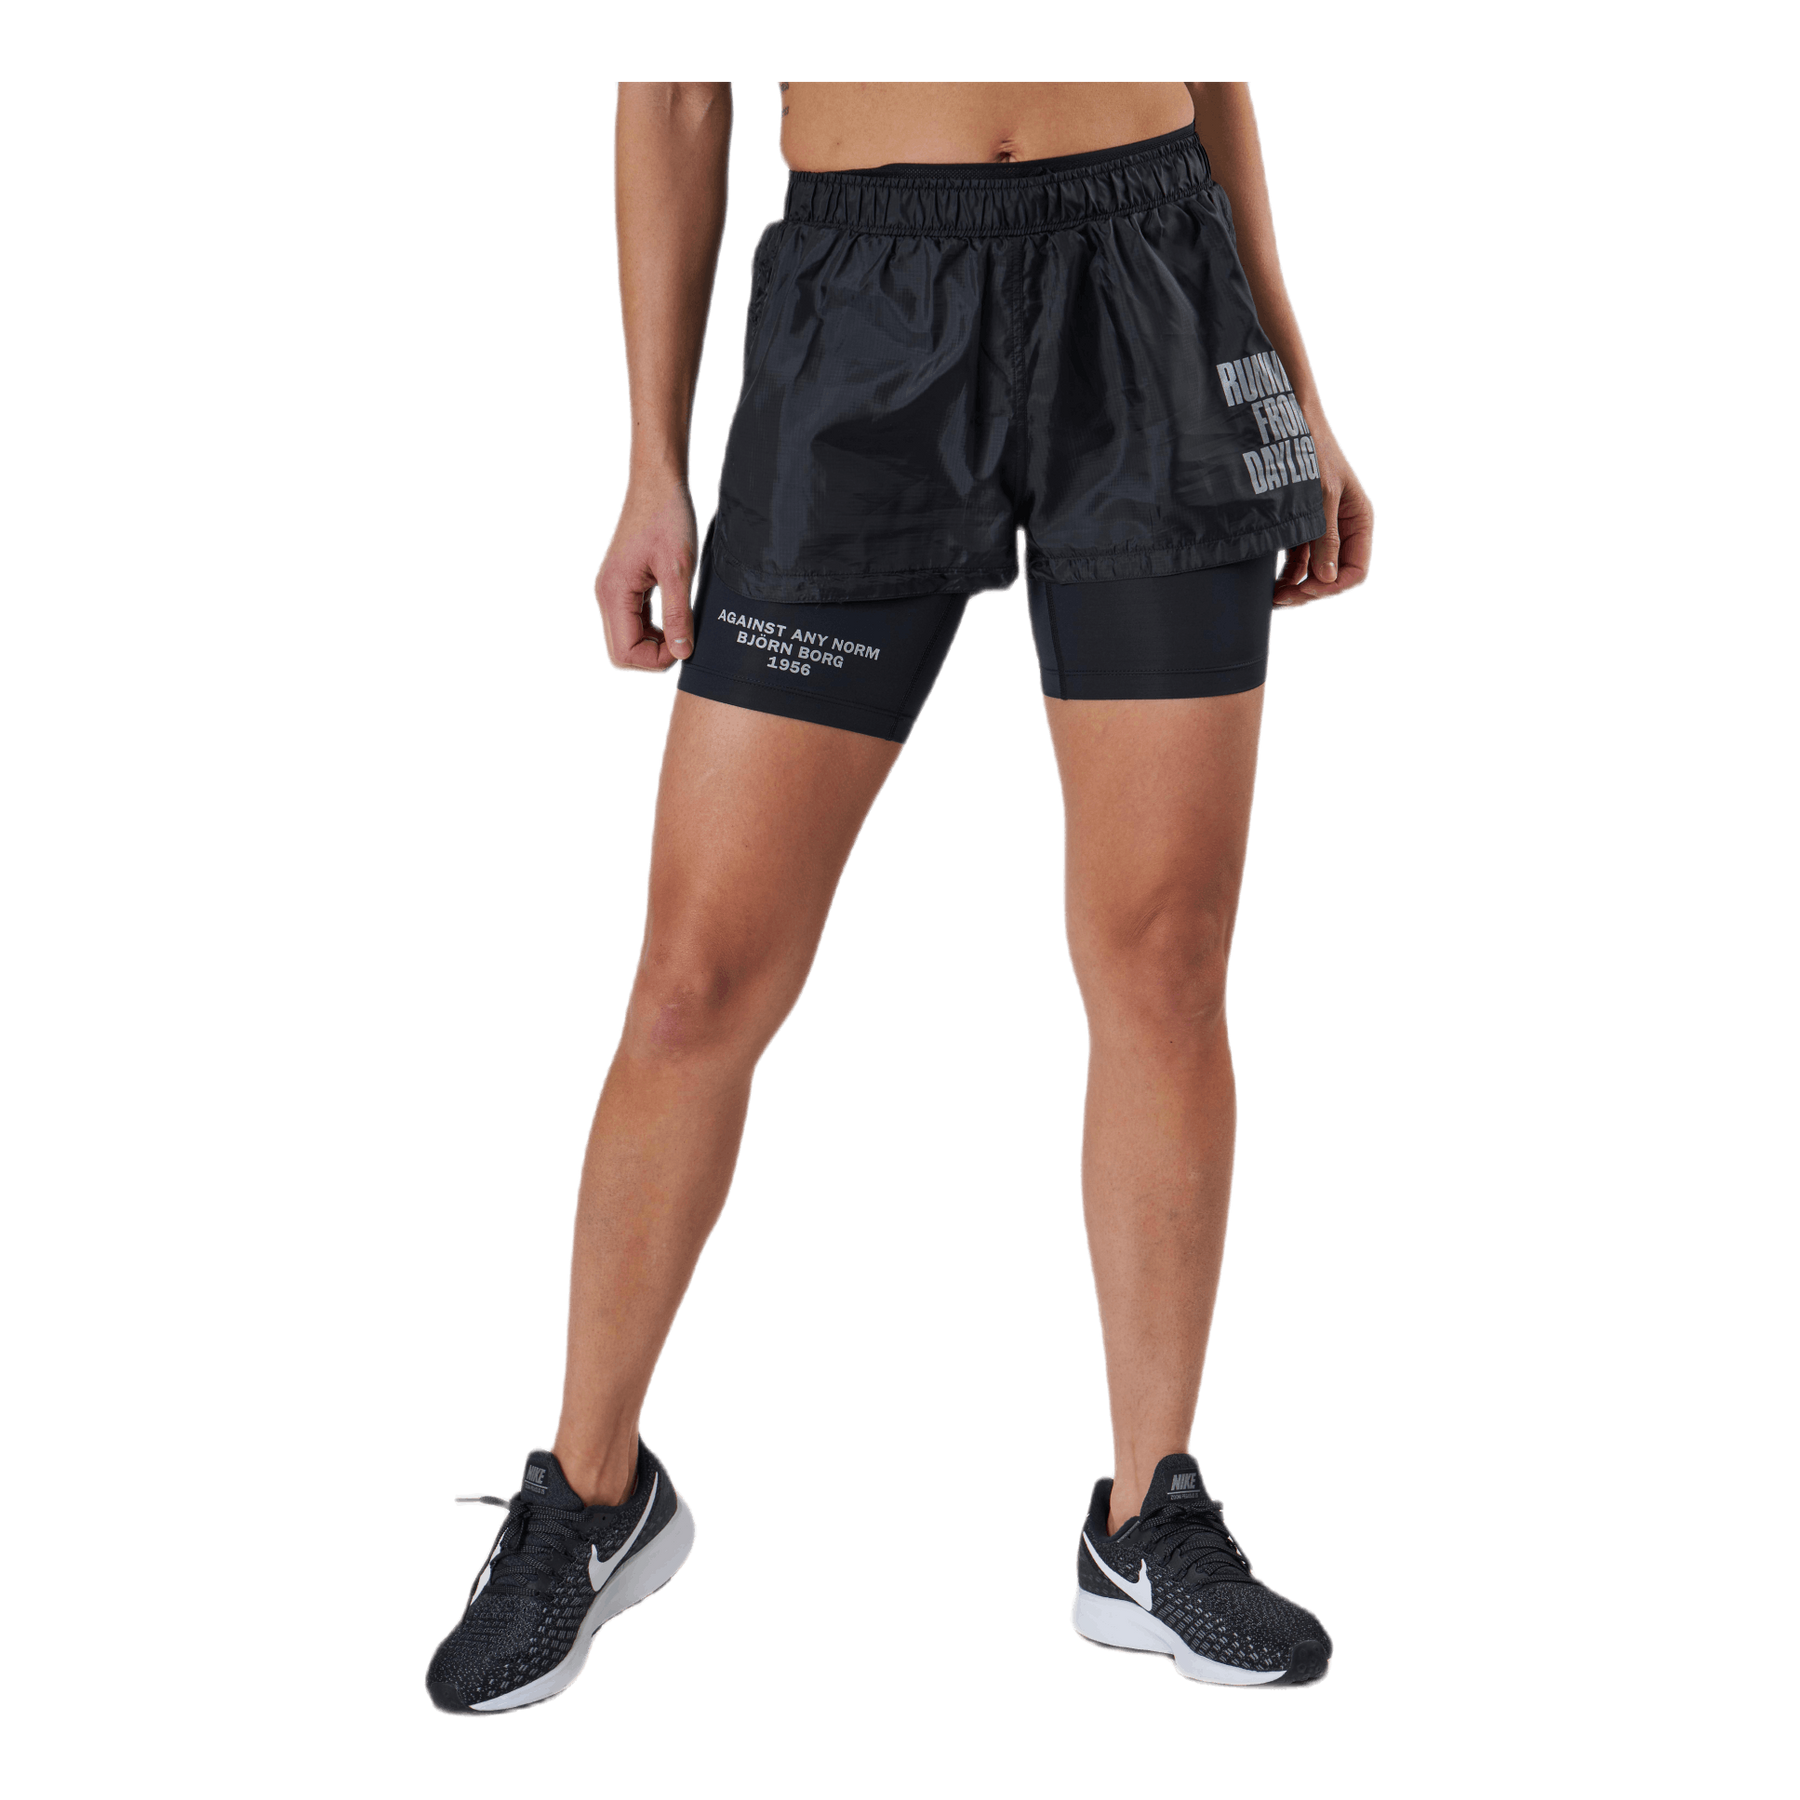 Shorts – Sportamore.com